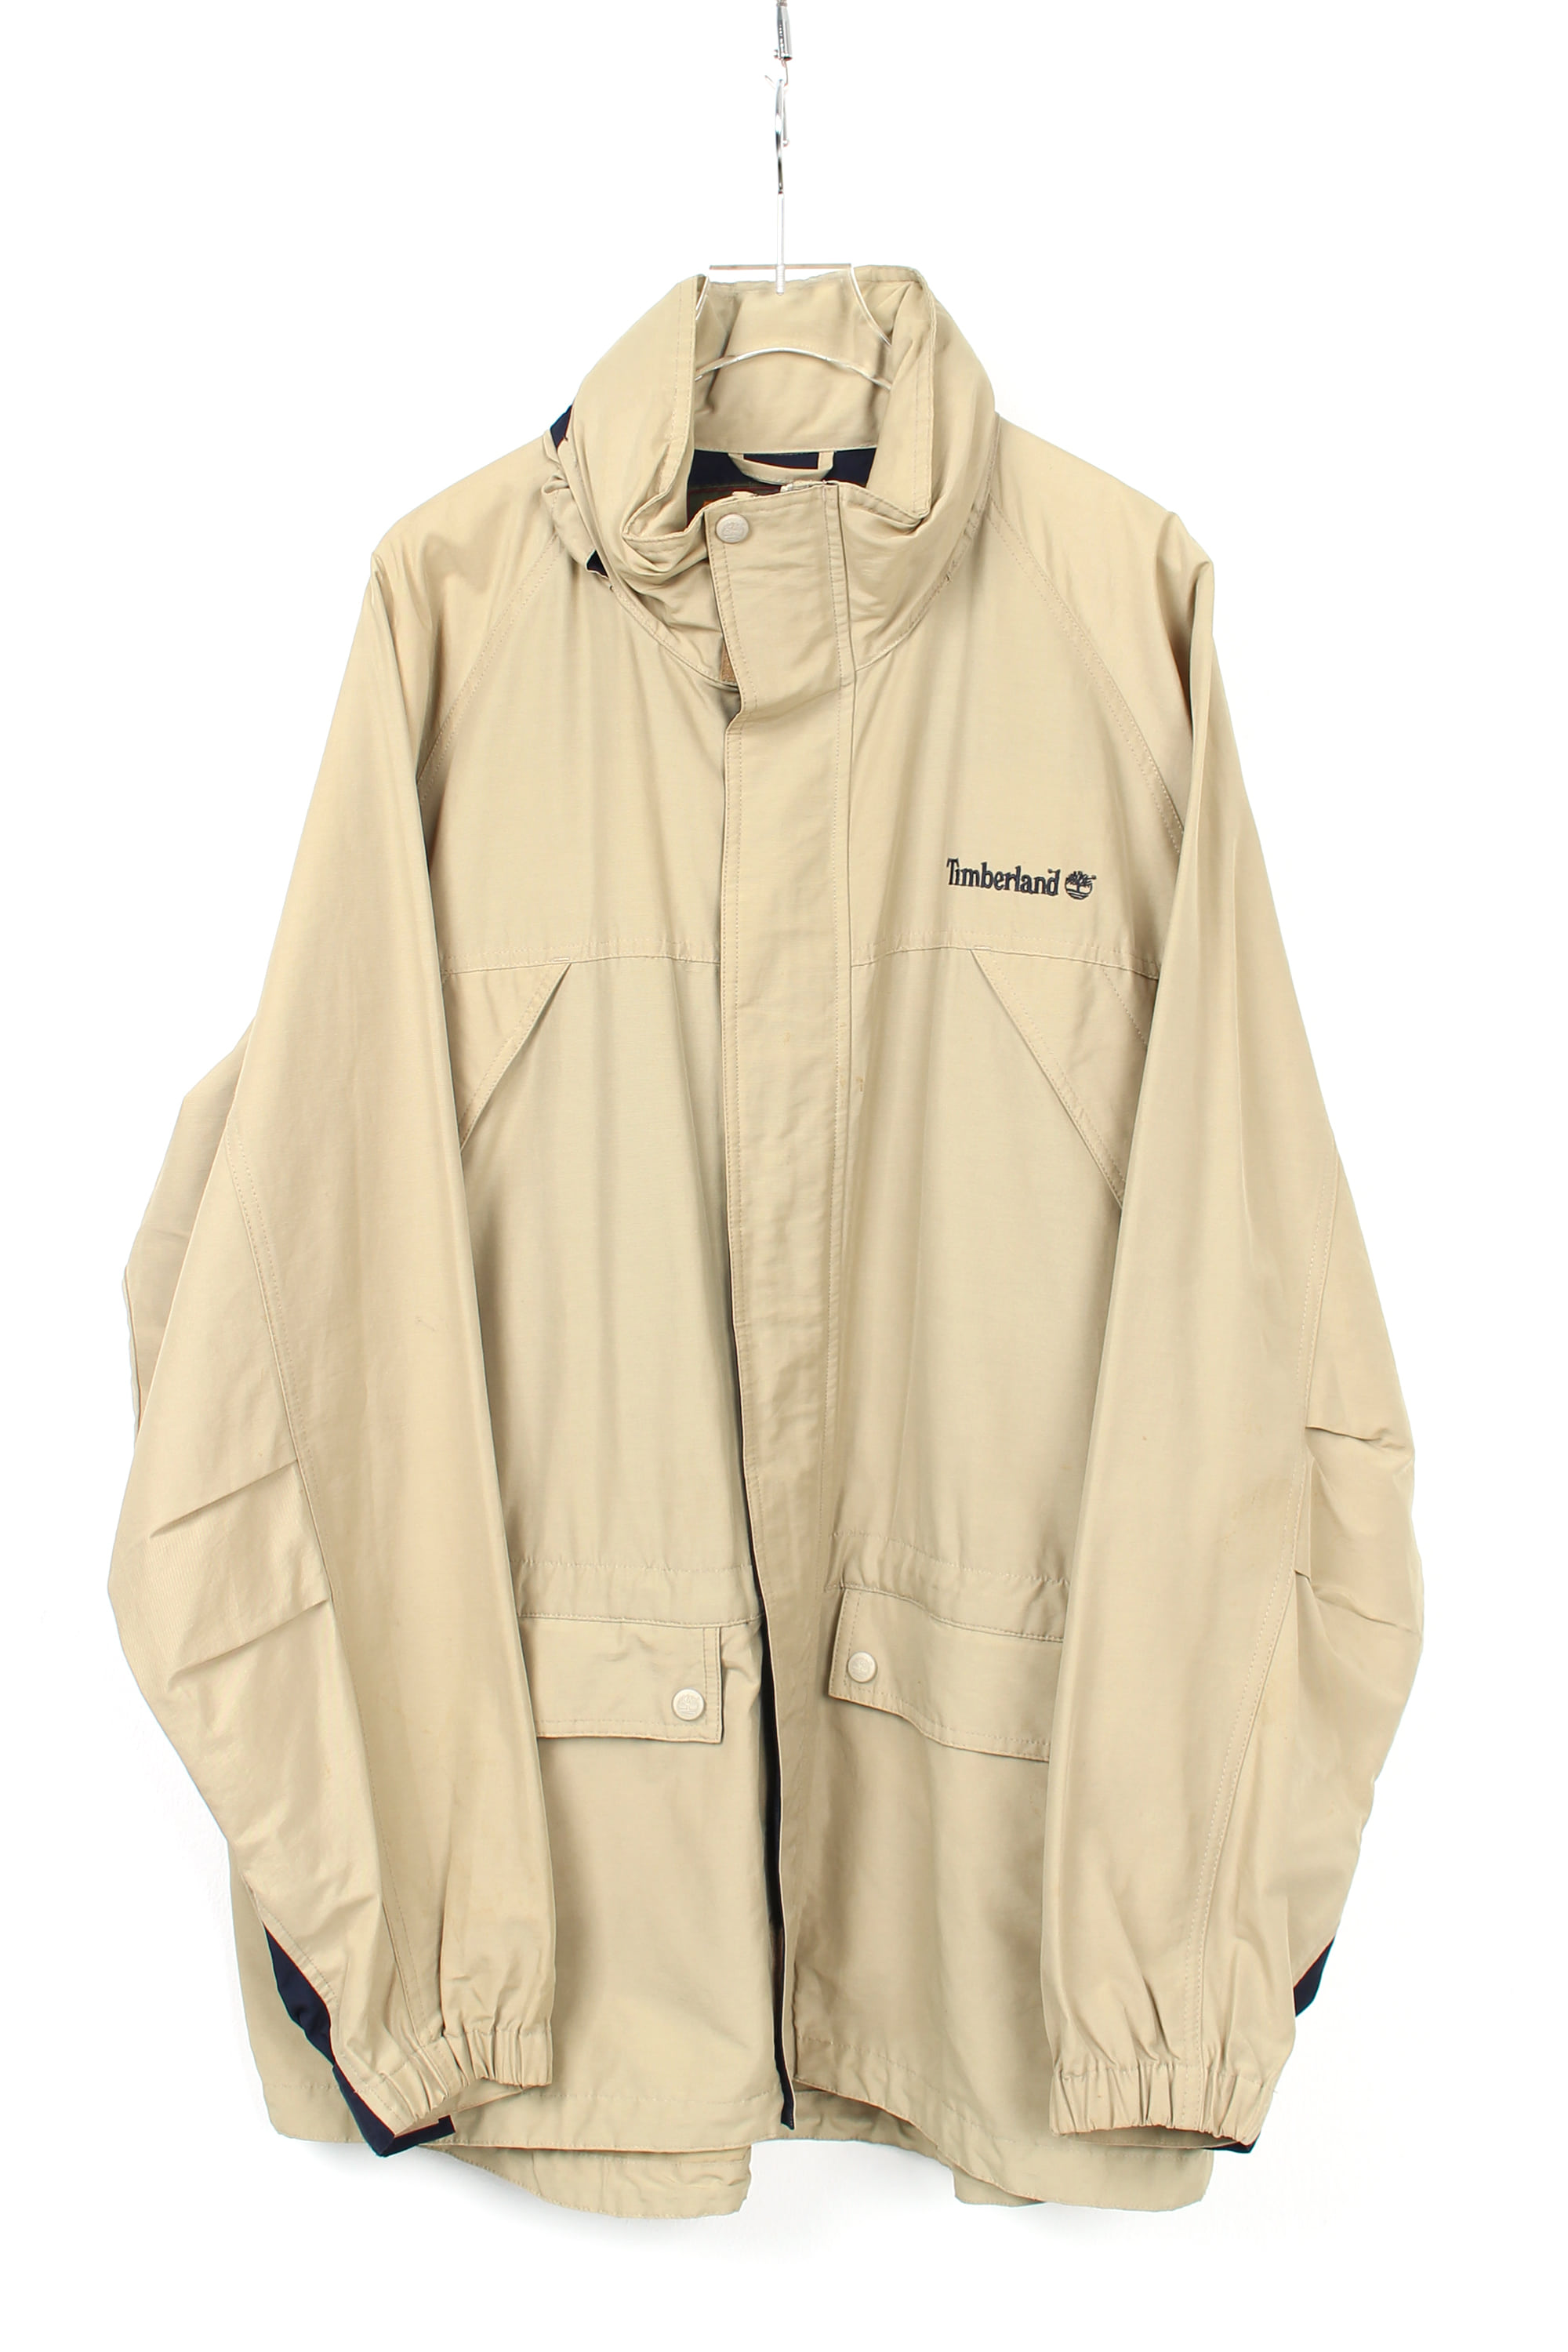 90s Timberland WEATHERGEAR jacket